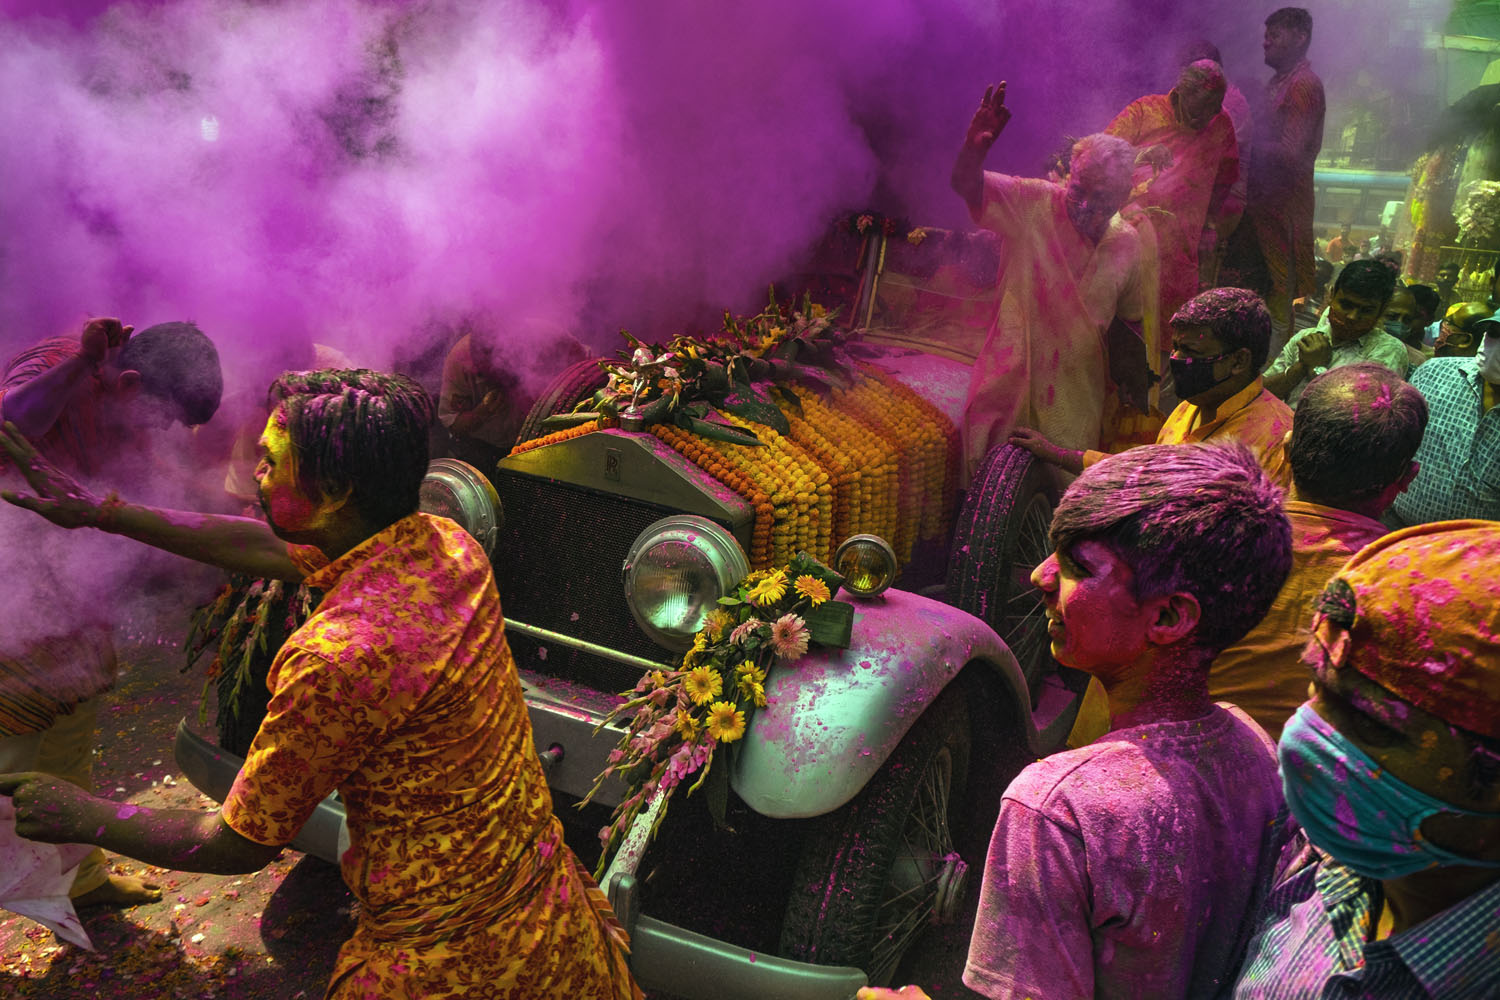 Festival Holi di Kolkata, India — mobil antik Rolls-Royce menjadi kereta arak patung Dewa Krishna dan Radha